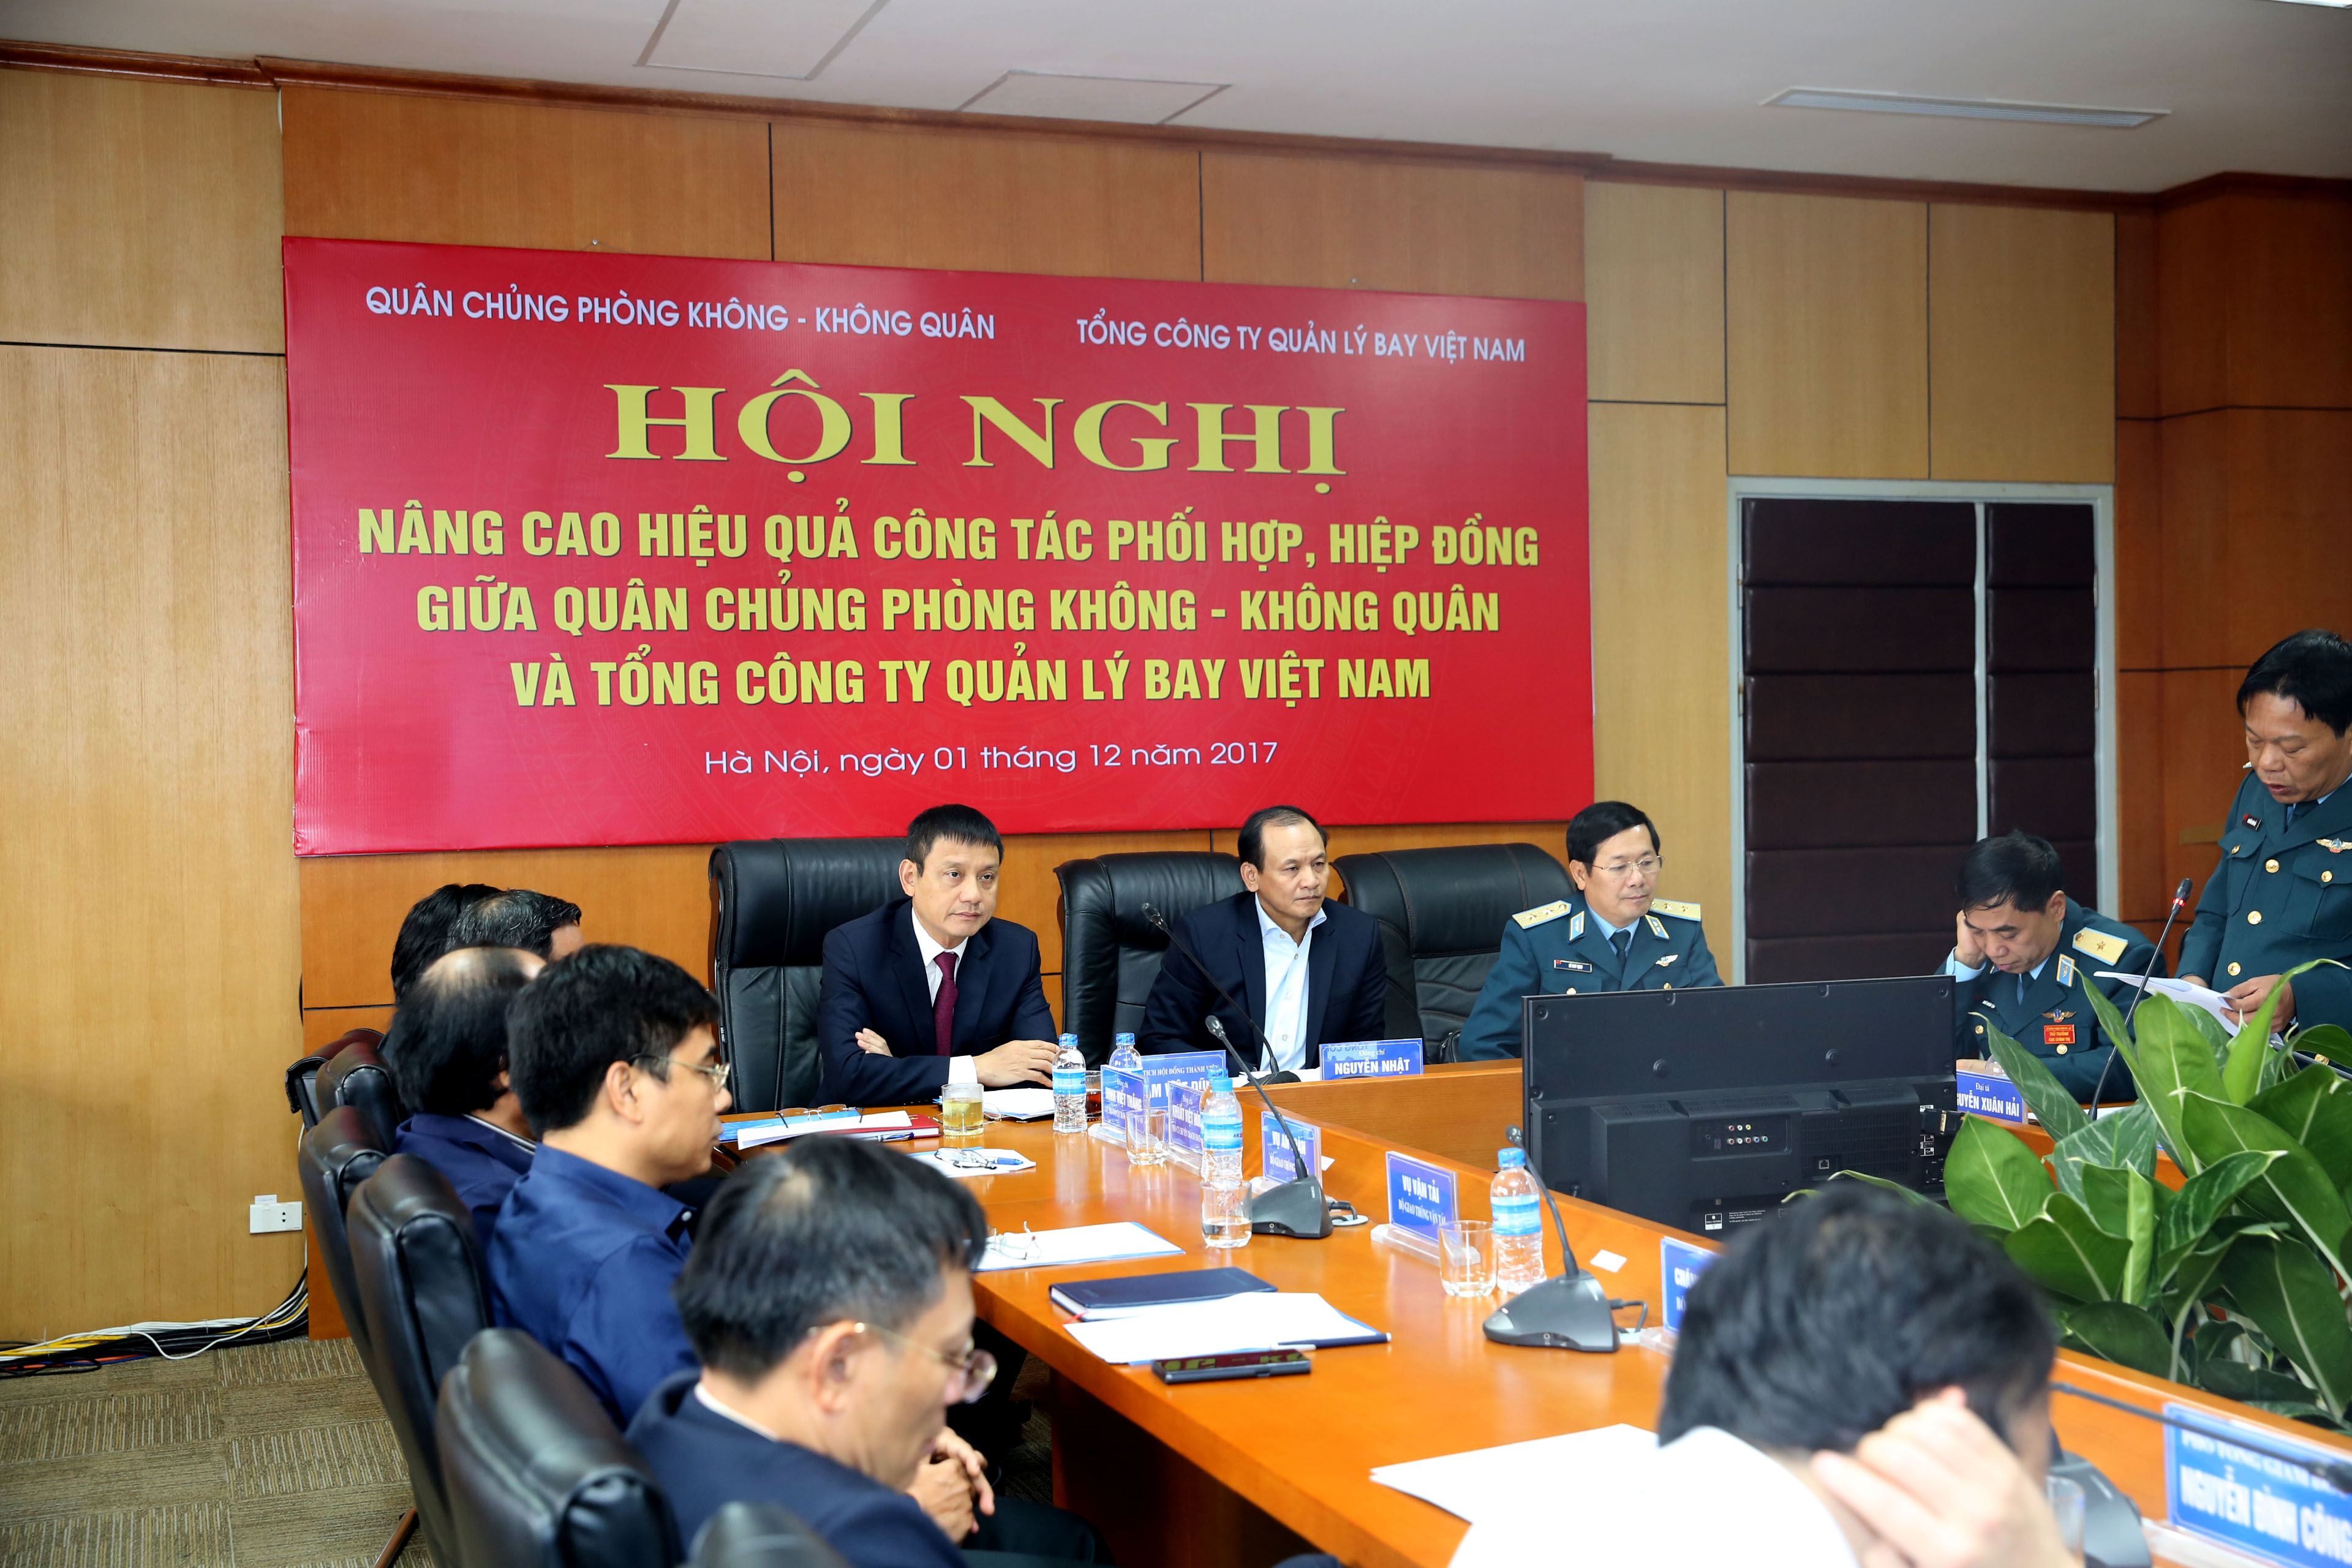 Hội nghị nâng cao hiệu quả công tác phối hợp, hiệp đồng giữa  Quân chủng Phòng không- Không quân và Tổng công ty Quản lý bay Việt Nam năm 2017